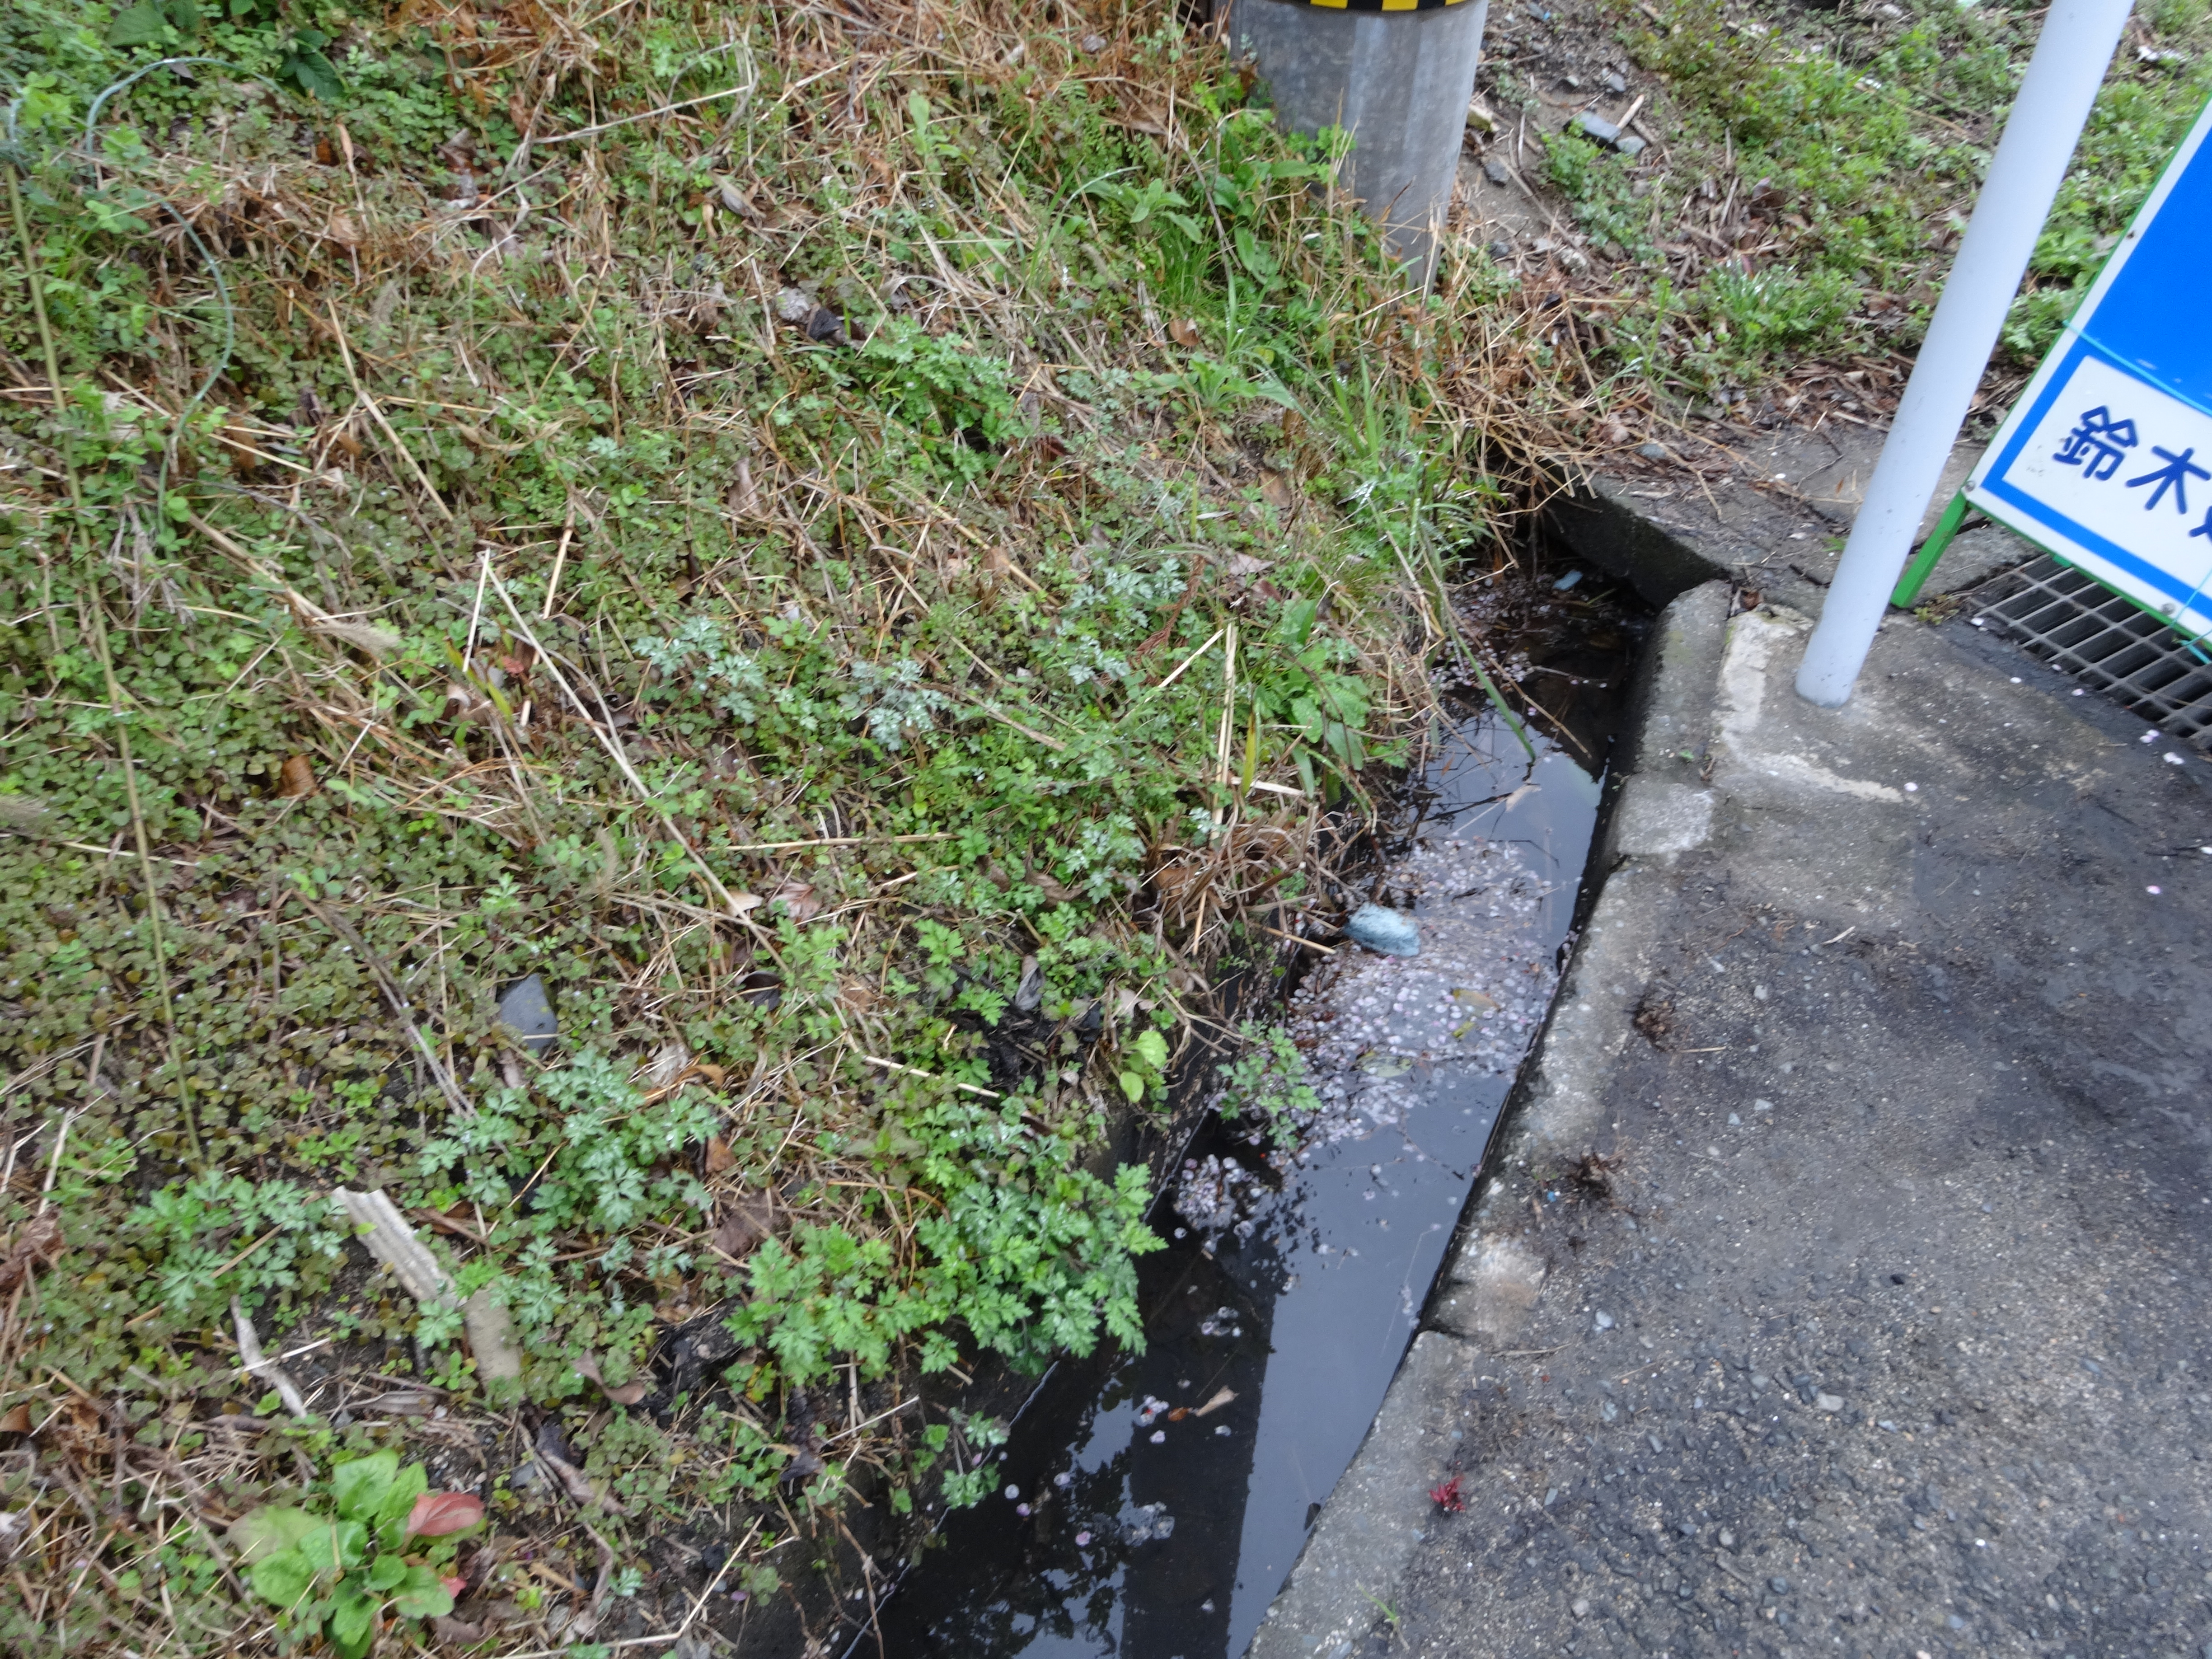 二丈浜玉道路側道の側溝の水がよどみ悪臭を放っている 笹栗純夫ブログ Sumio Column